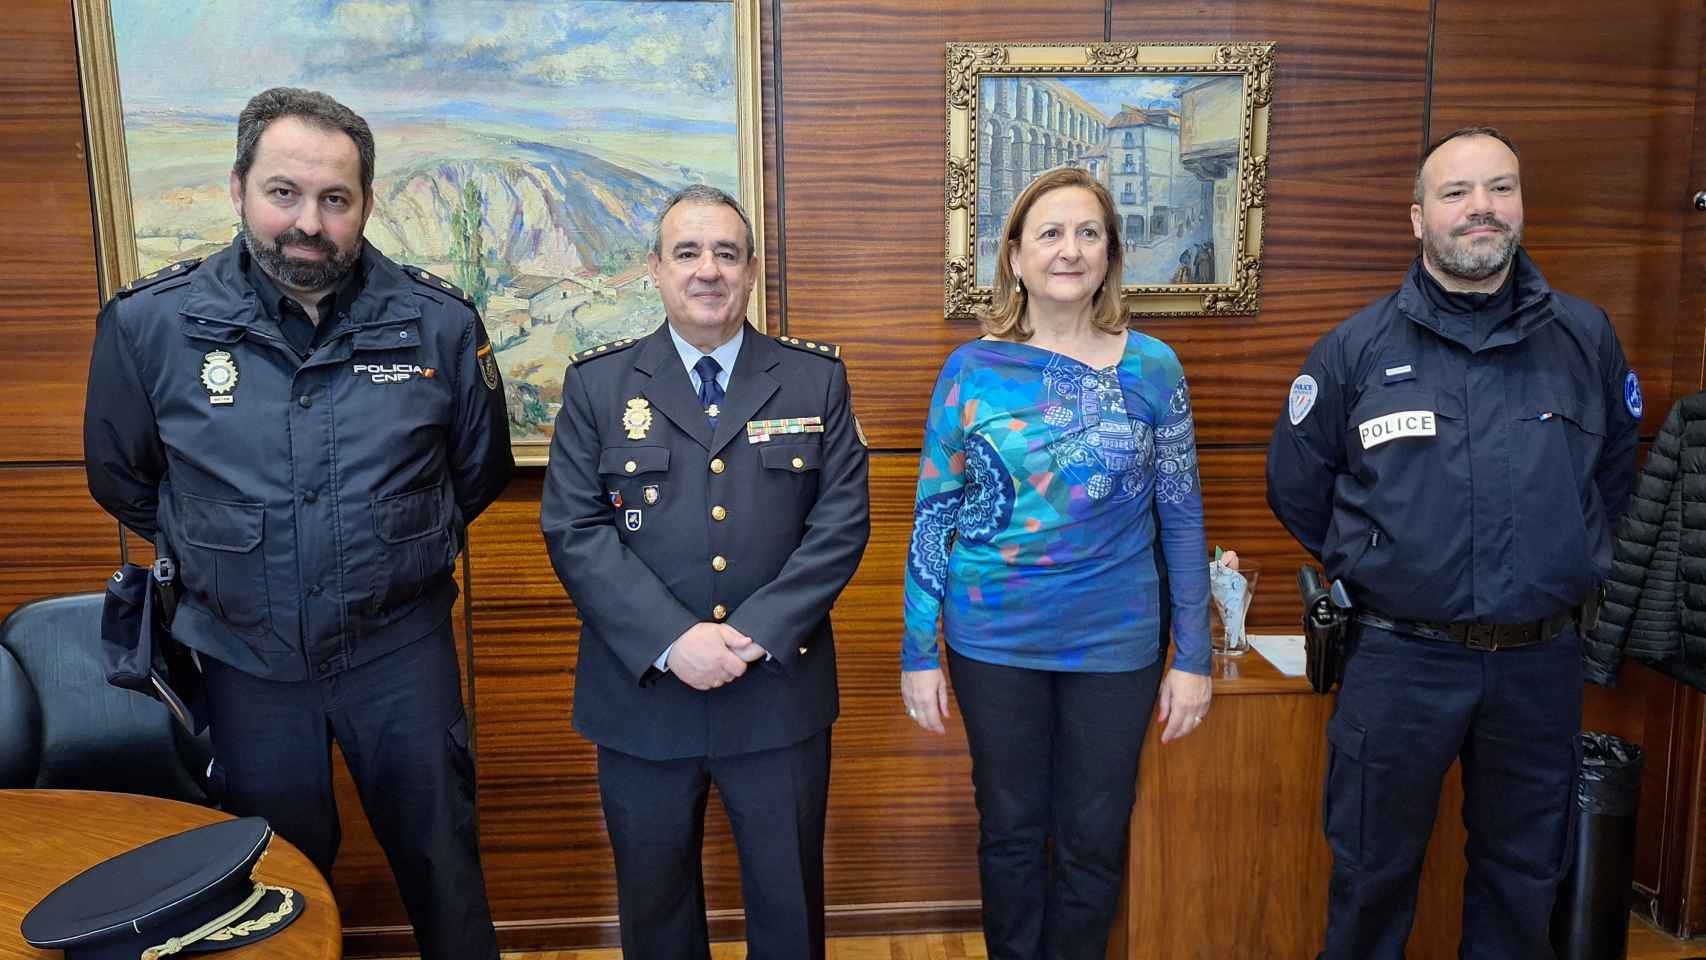 El agente visita a la subdelegada del Gobierno, junto con el comisario jefe de la Policía Nacional en Segovia